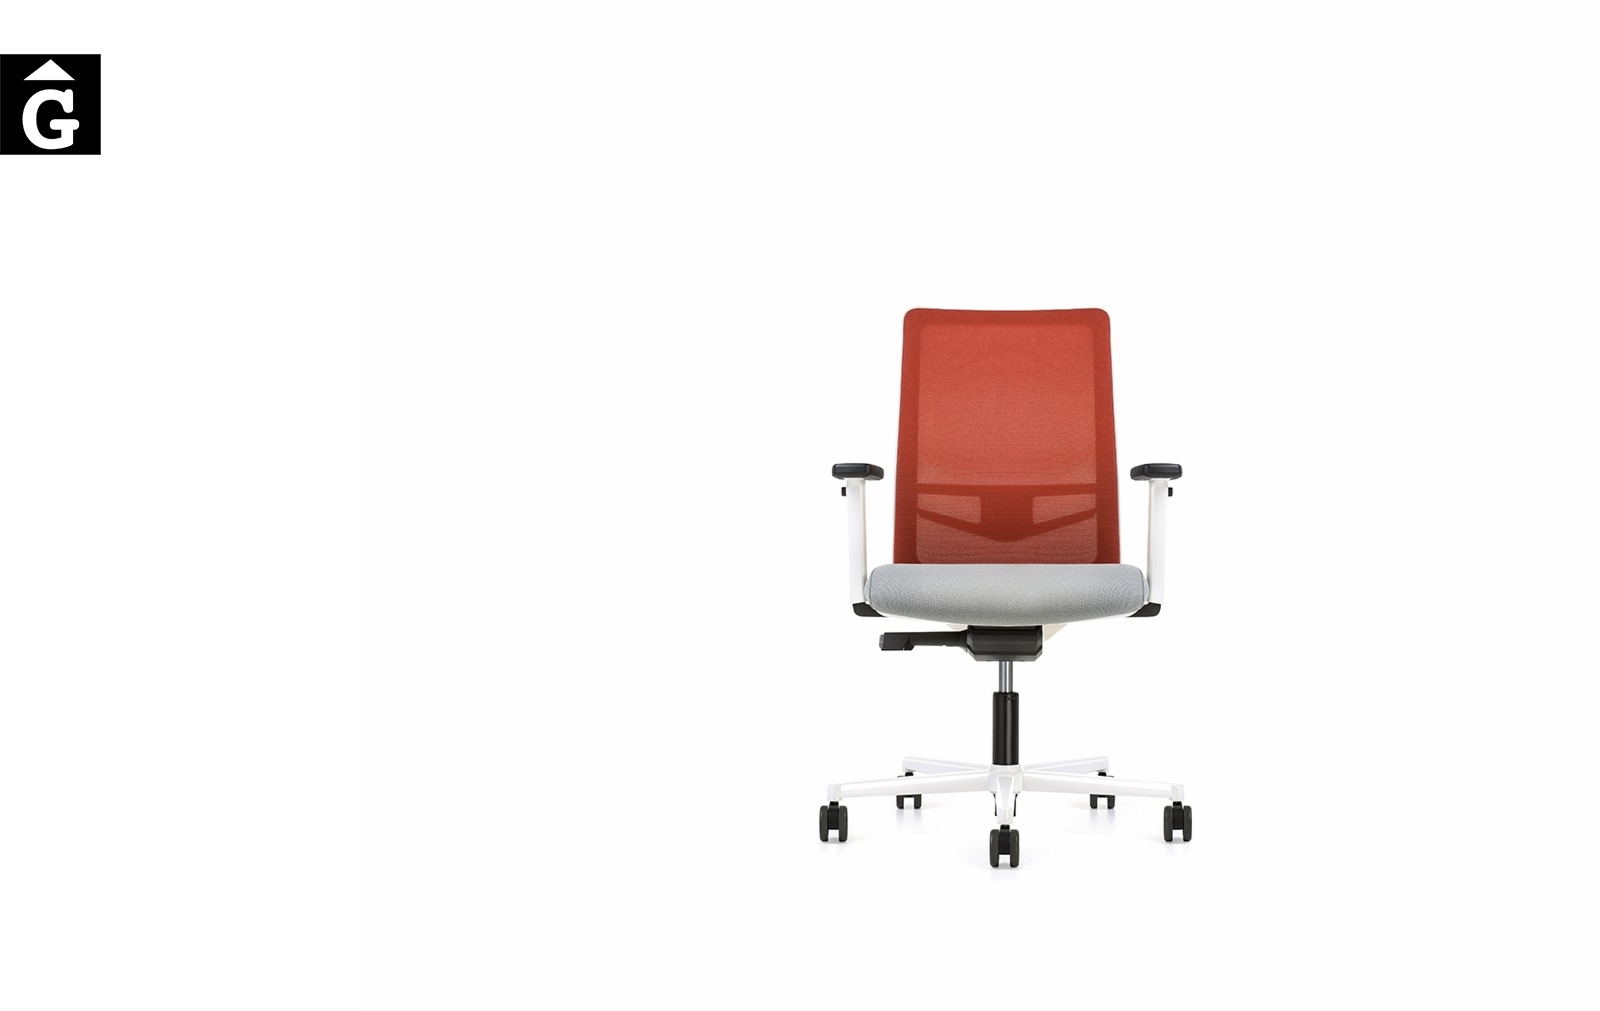 Cadira despatx Equis Blanca | Vista frontal | Cadira operativa Dile | mobiliari d’oficina molt interessant | mobles Gifreu | botiga | Contract | Mobles nous oficina